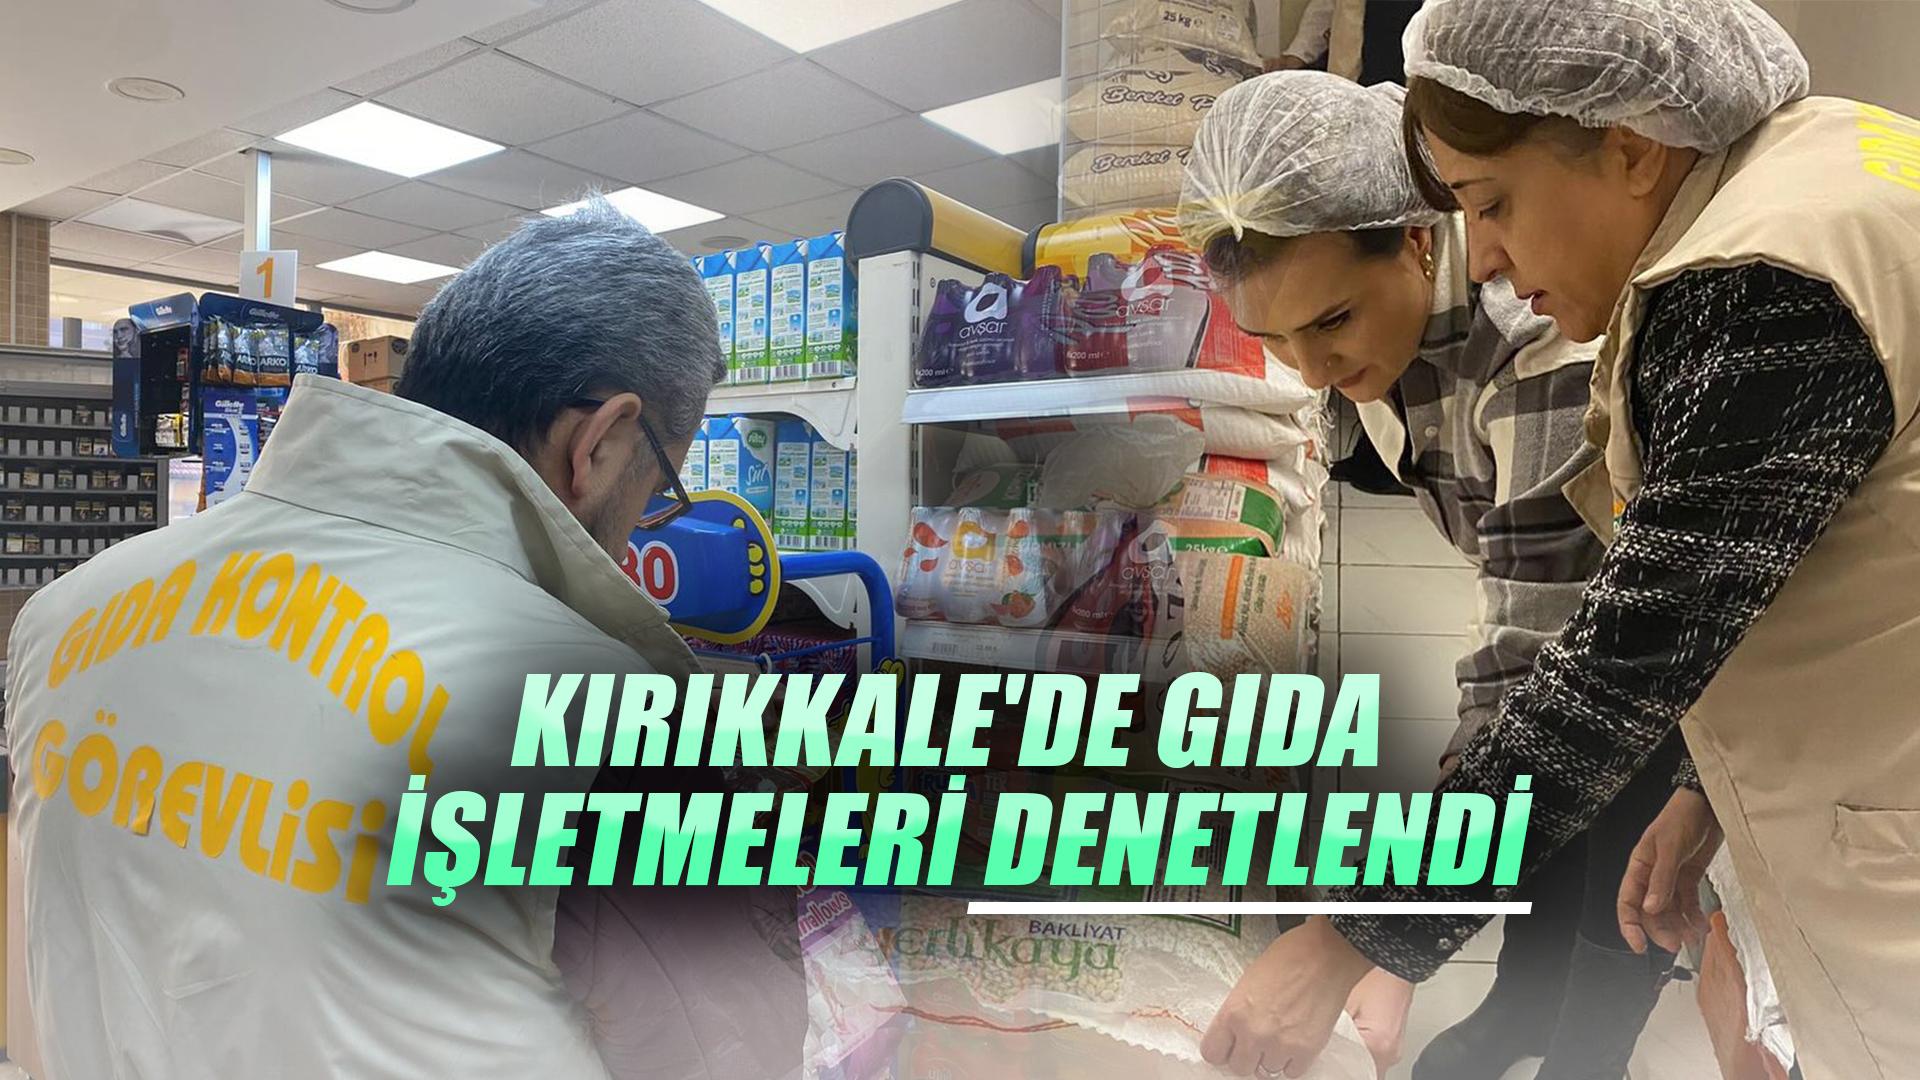 Kırıkkale'de gıda işletmeleri denetlendi